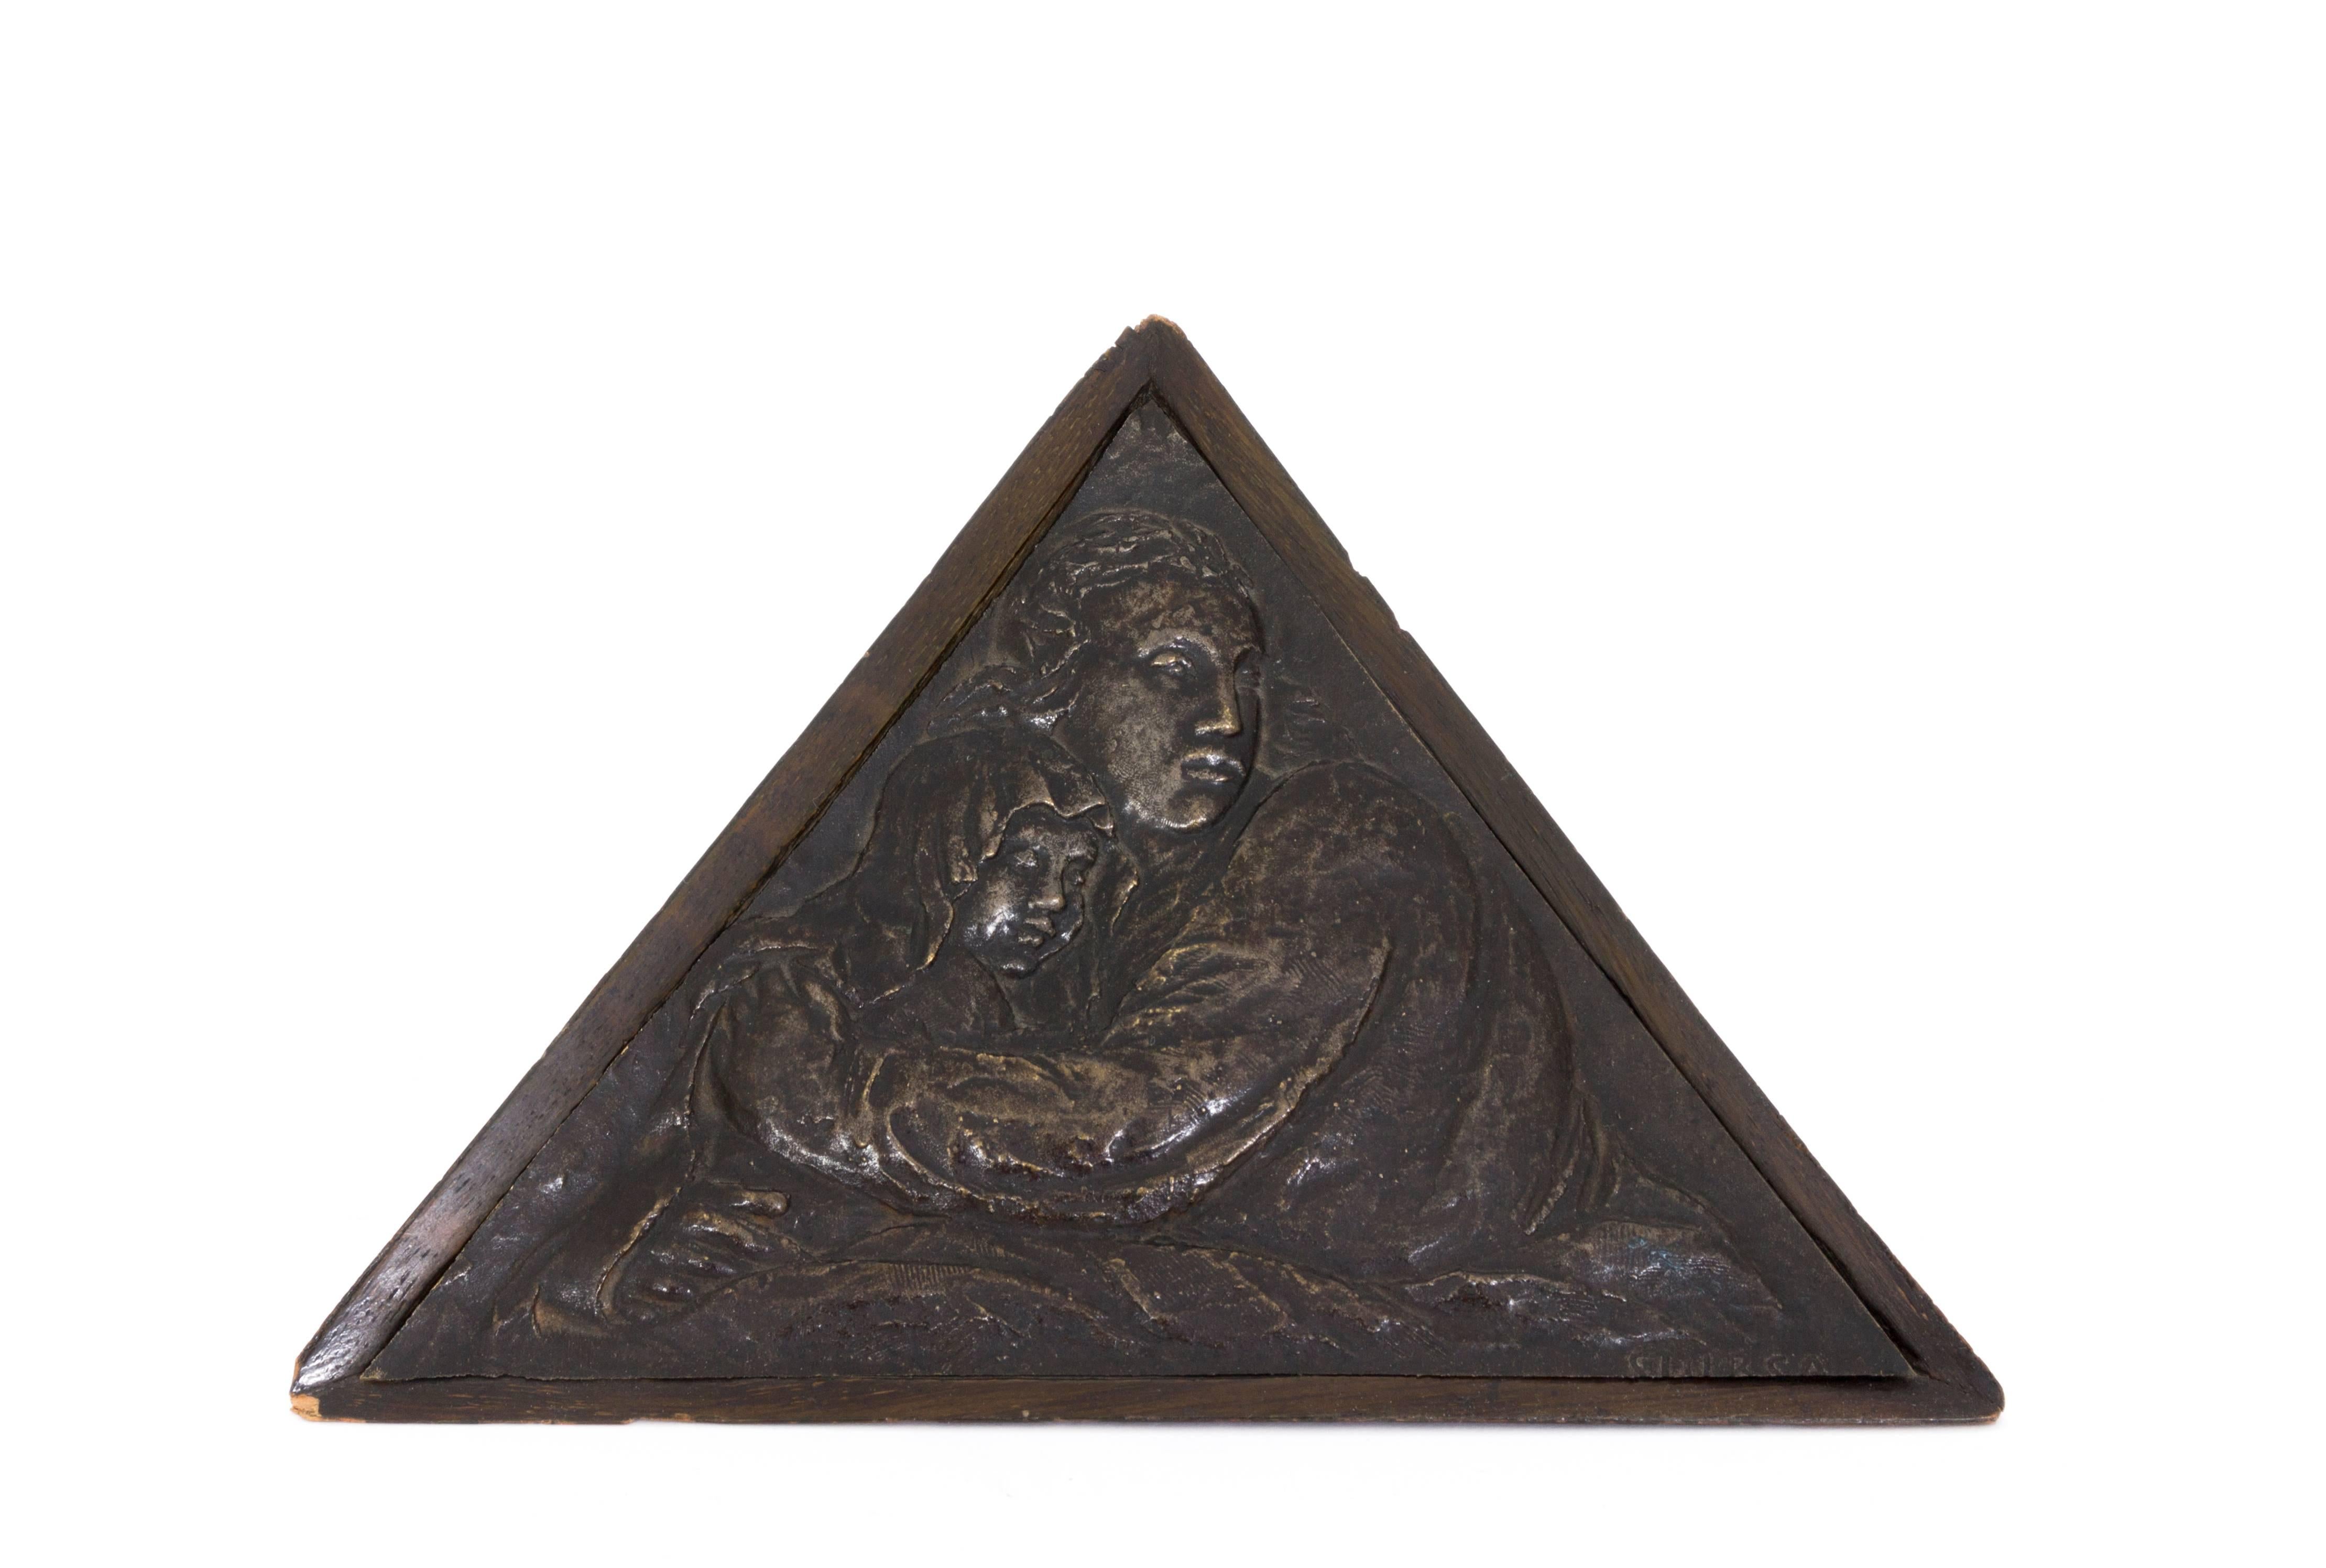 Jan Stursa Figurative Sculpture - Mutter und Kind (Mother and Child) - Bronze, Relief, Triangular, Wooden Frame